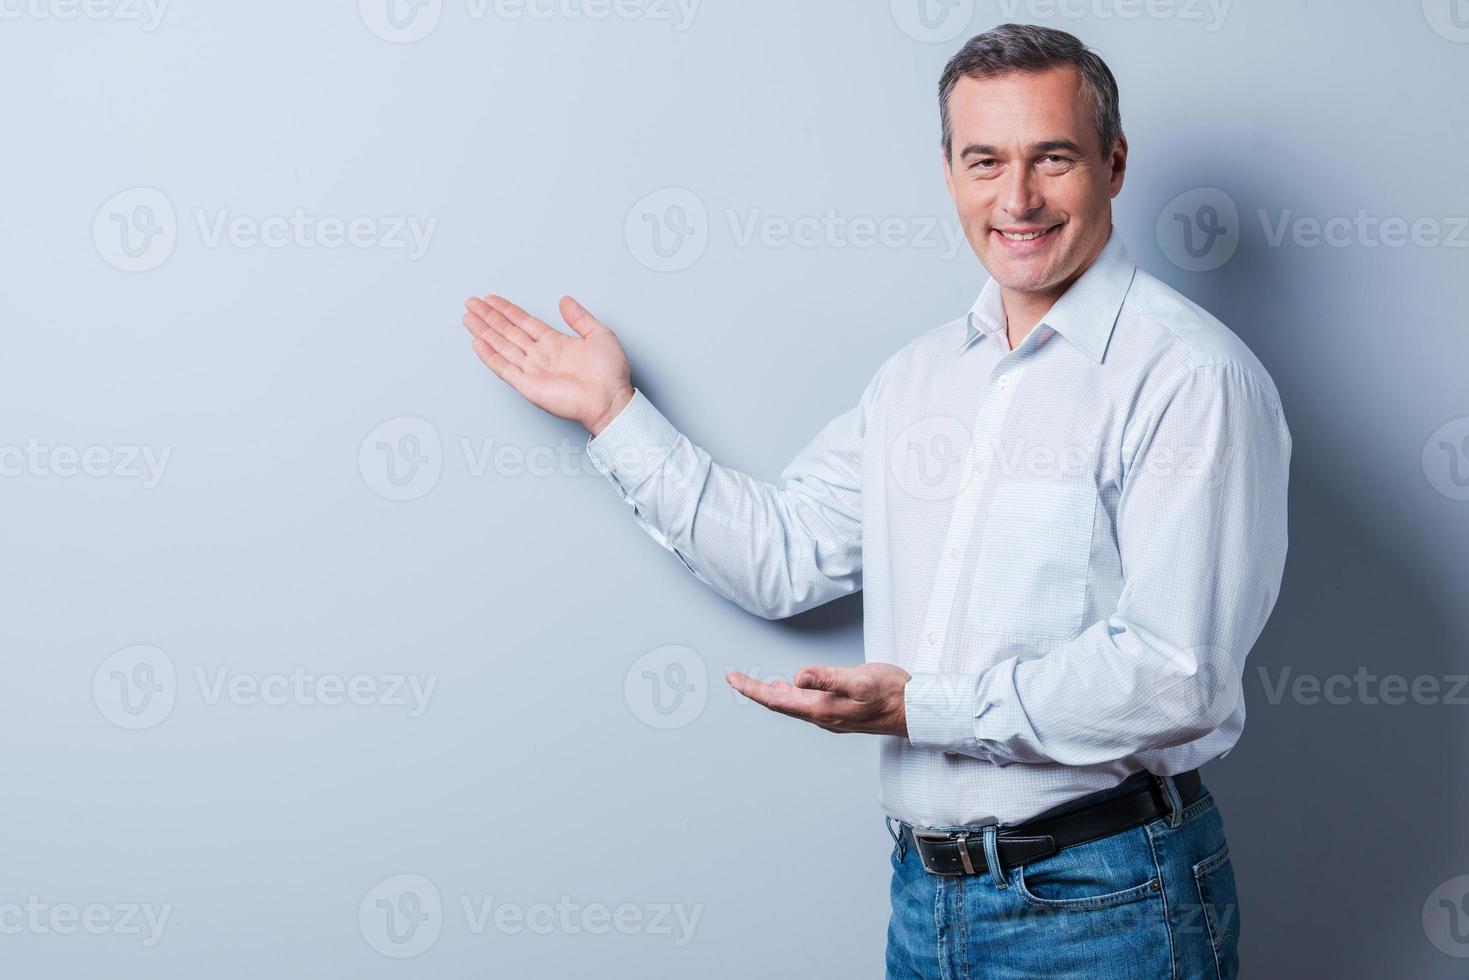 vendendo seu produto. homem maduro confiante na camisa olhando para a câmera e apontando para fora em pé contra um fundo cinza foto